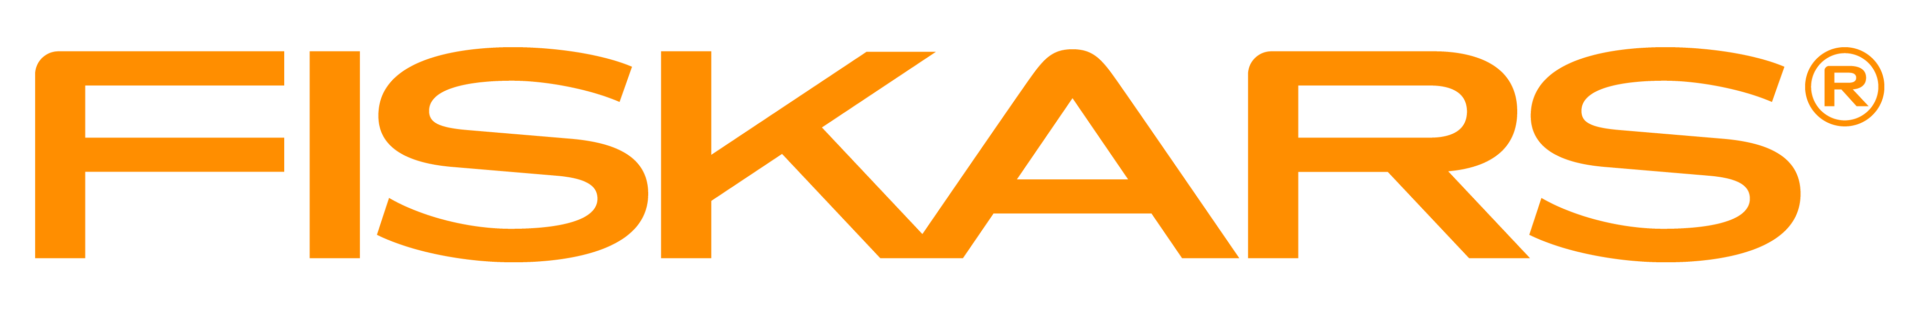 Fiskars_logo_orange_RGB